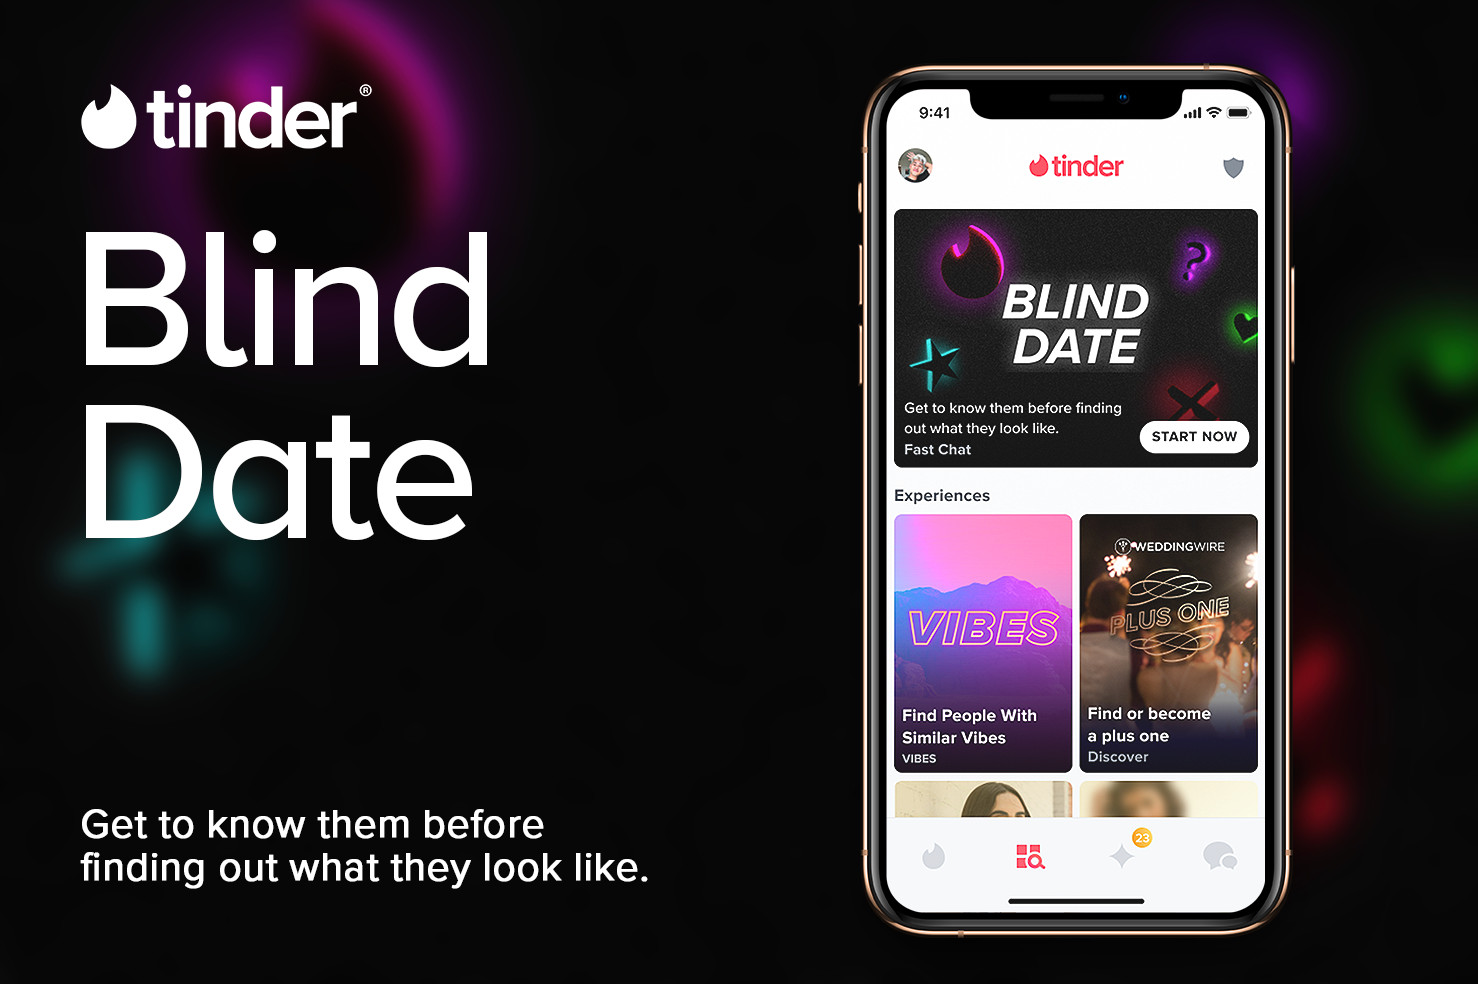 tinder blind date dating app